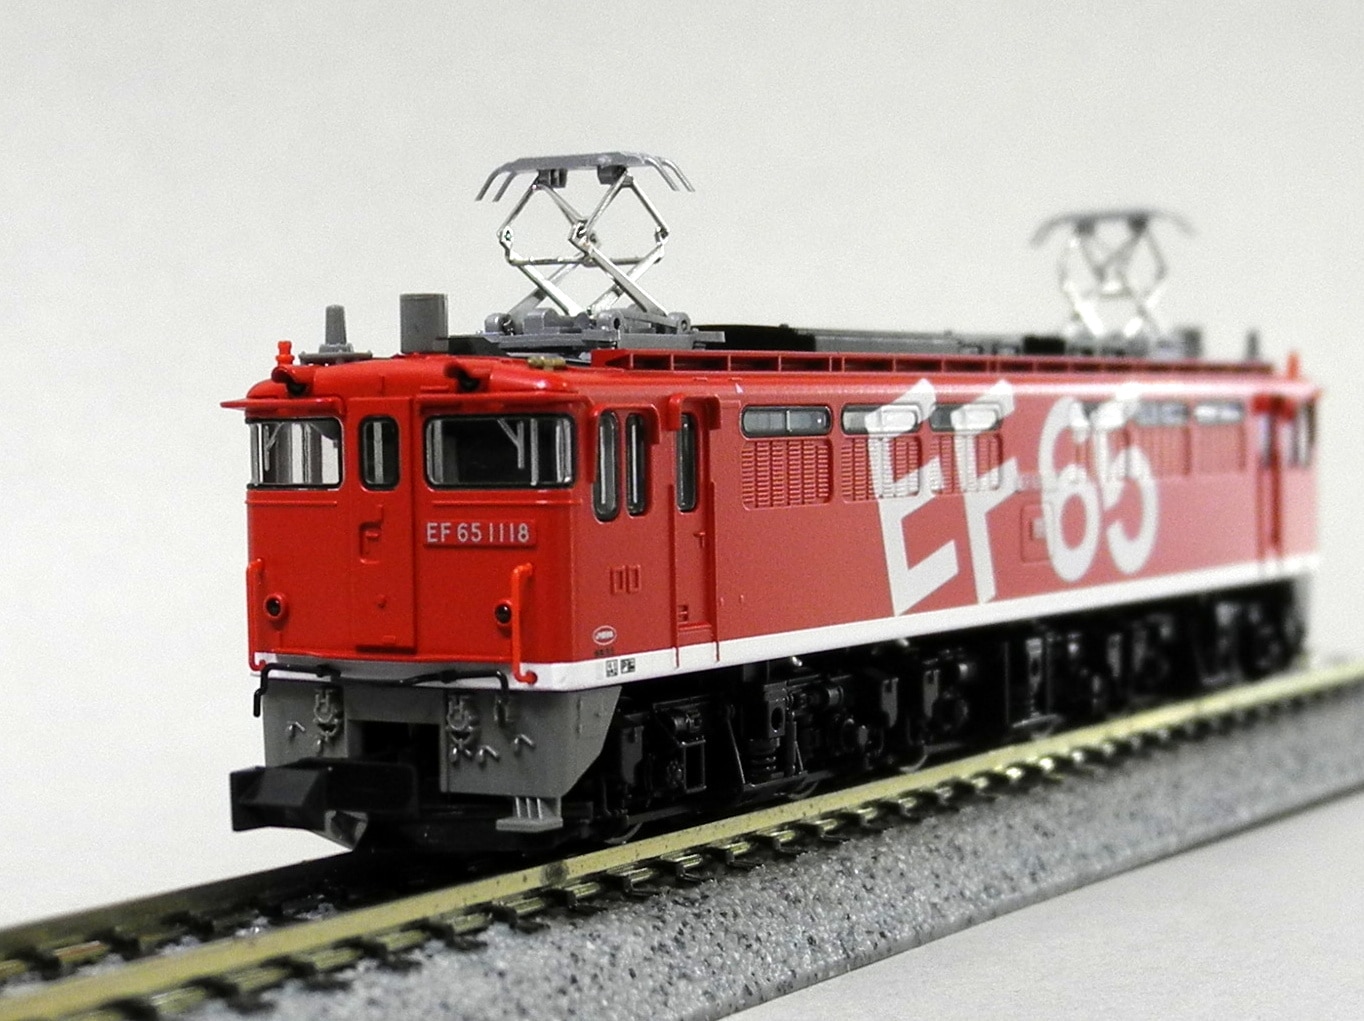 11556円 割引発見 KATO Nゲージ EF65 1118 レインボー塗装機 3061-3 鉄道模型 電気機関車